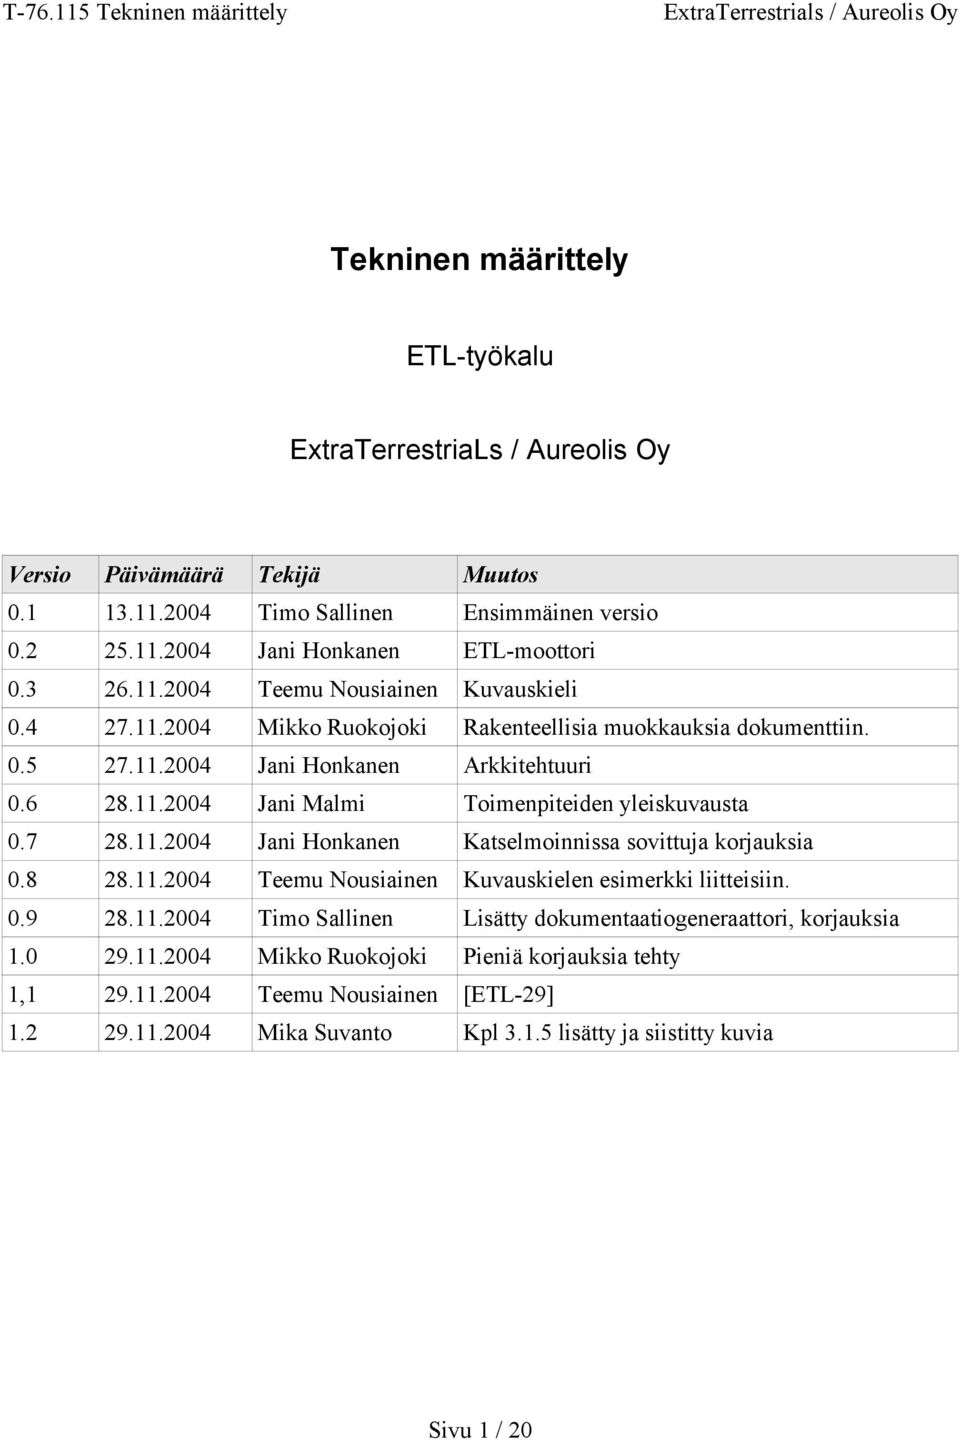 7 28.11.2004 Jani Honkanen Katselmoinnissa sovittuja korjauksia 0.8 28.11.2004 Teemu Nousiainen kielen esimerkki liitteisiin. 0.9 28.11.2004 Timo Sallinen Lisätty dokumentaatiogeneraattori, korjauksia 1.